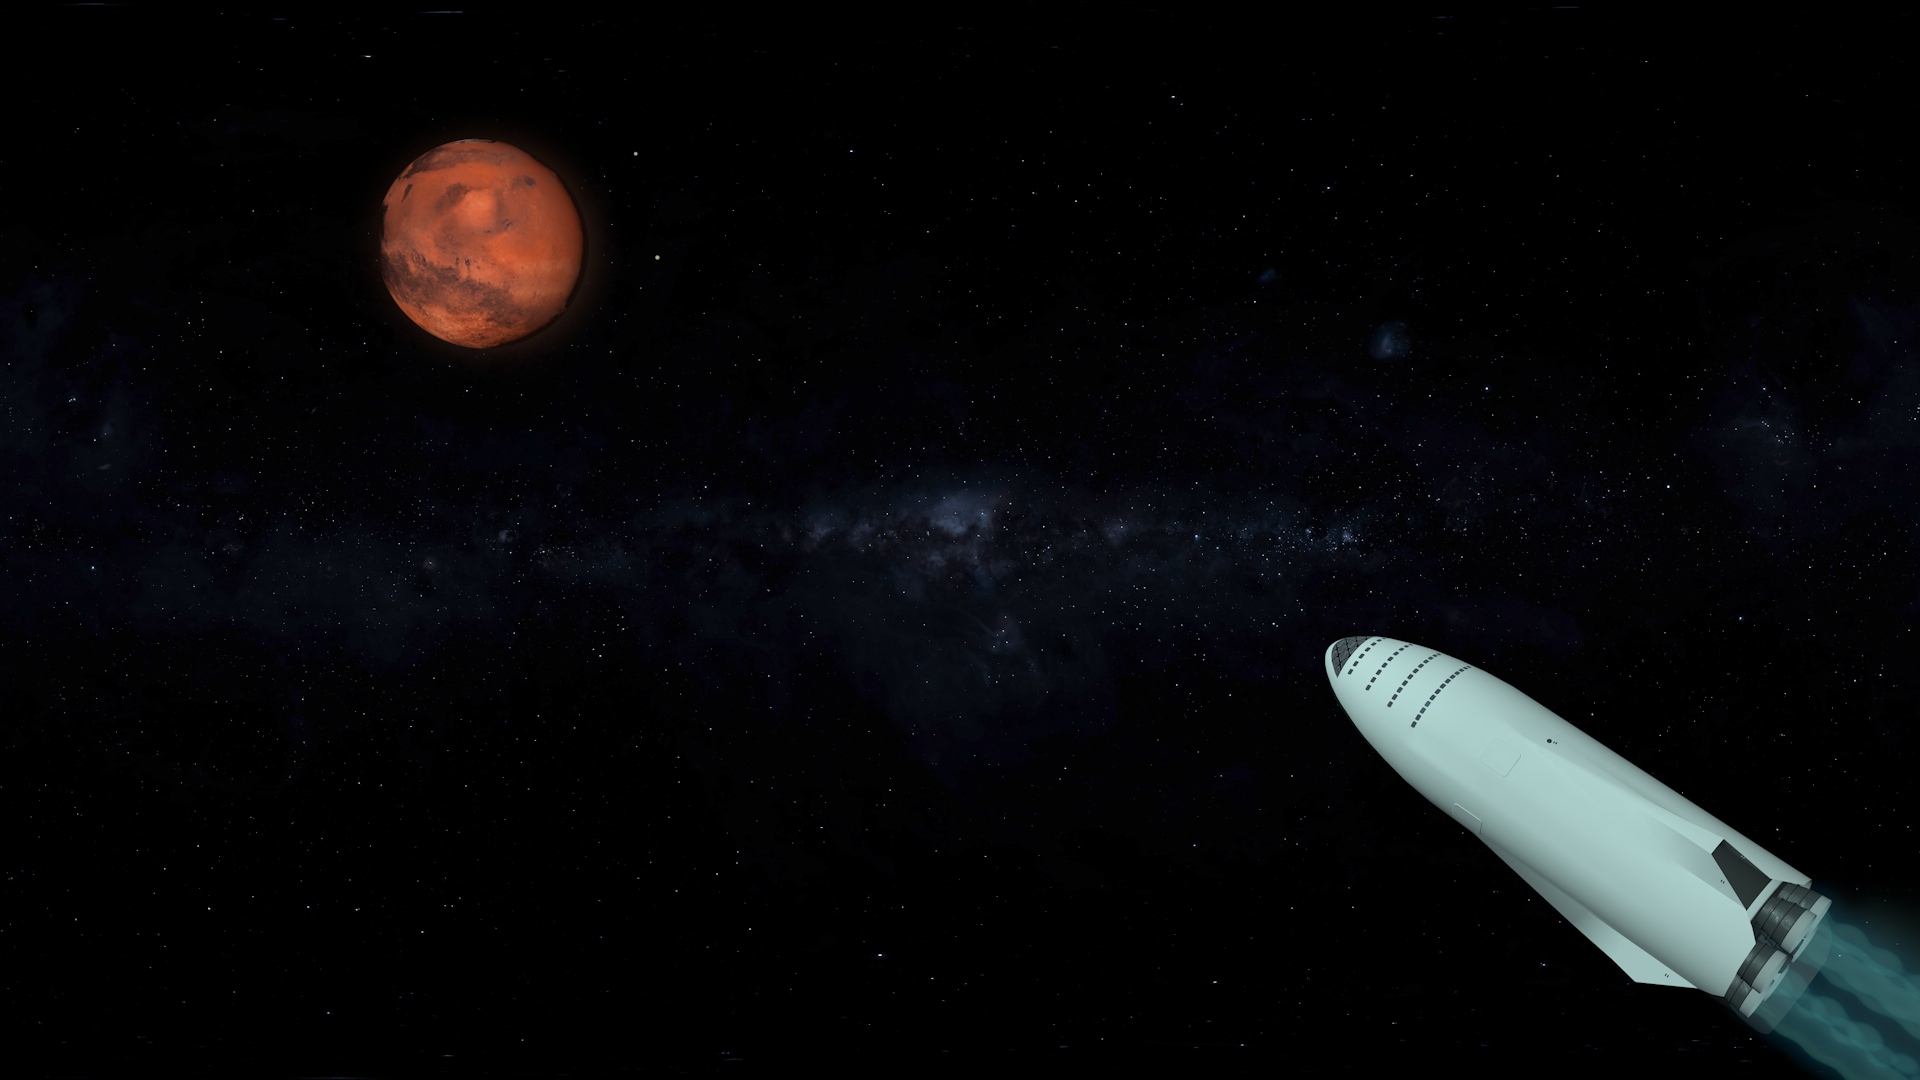 स्पेसएक्स बिग फाल्कन रॉकेट Cinema 4d maxwell render में प्रस्तुत छवि